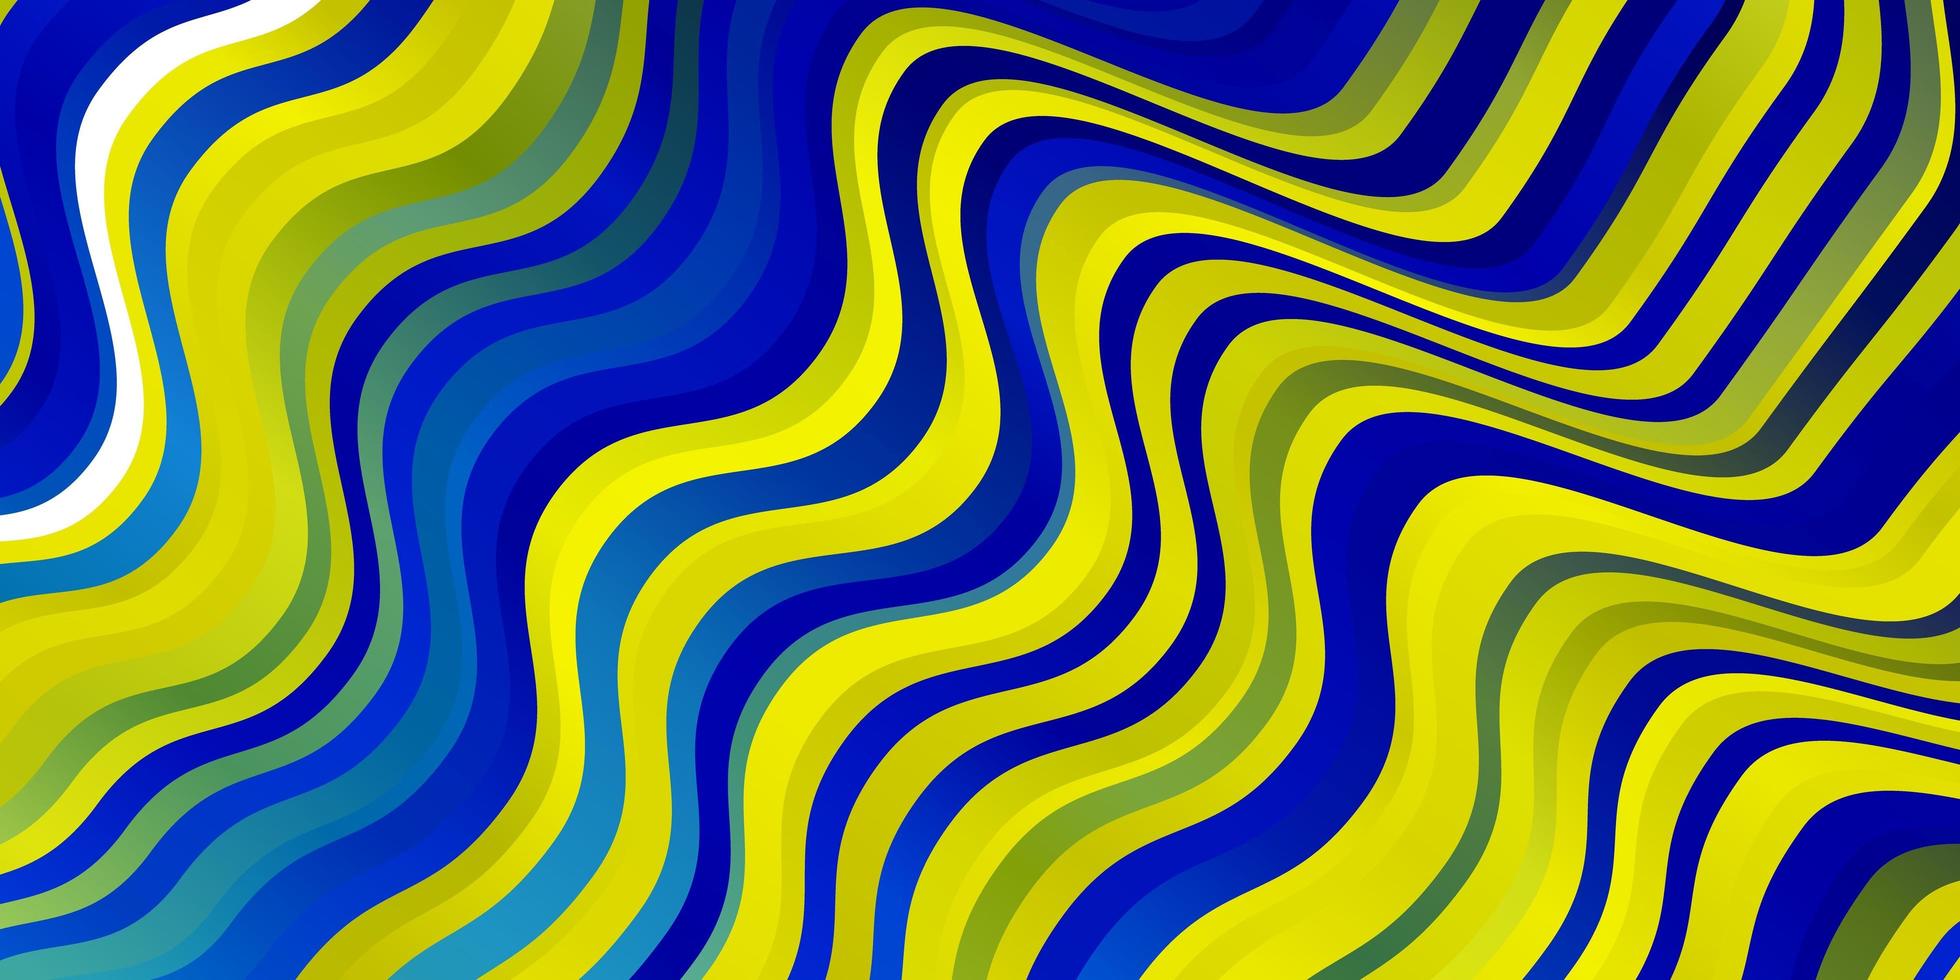 textura de vector azul claro, amarillo con arco circular.